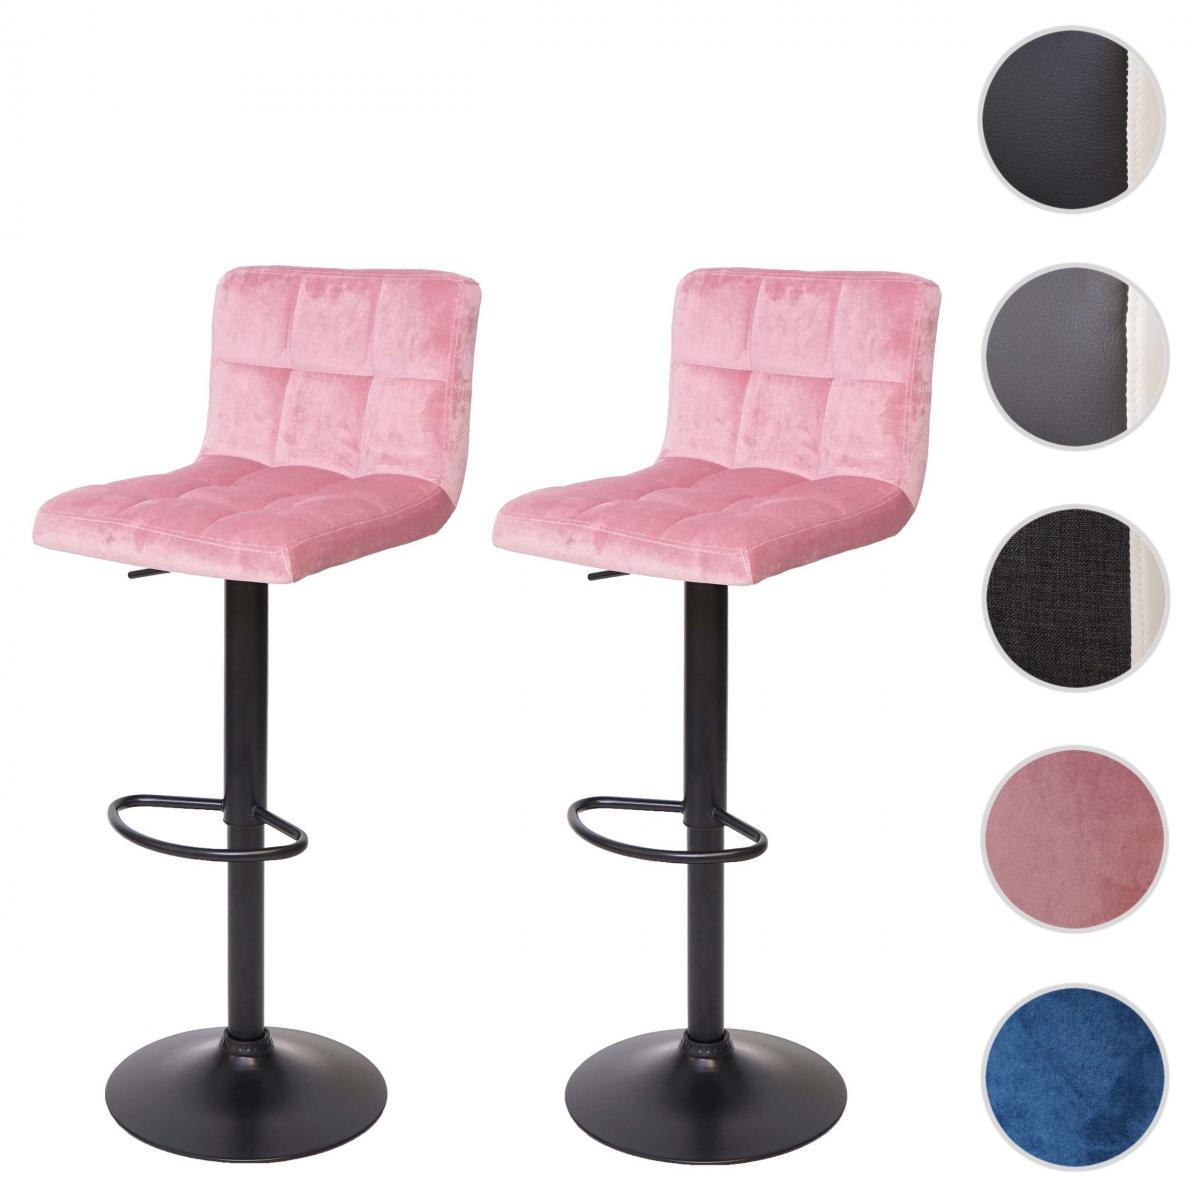 Mendler - 2x Tabouret de bar HWC-G87, chaise bar/comptoir, réglable en hauteur ~ velours rose, pied noir - Tabourets